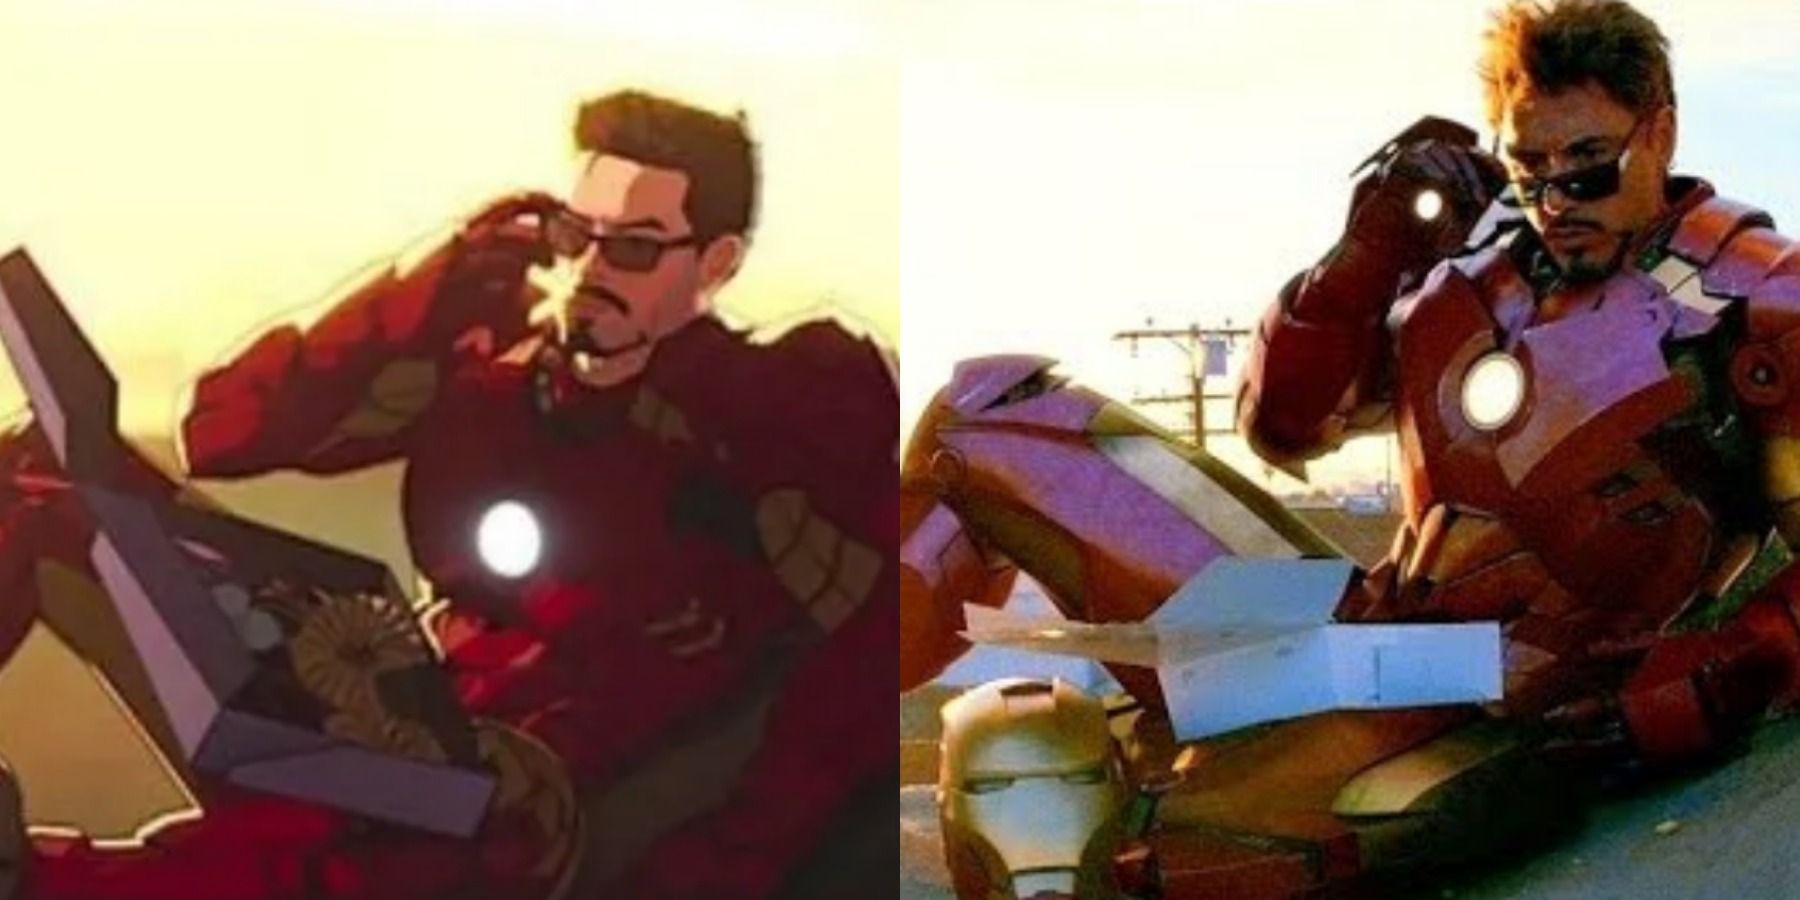 Разделенное изображение изображает Тони Старка в третьем эпизоде ​​«Что, если» и Железного человека 2 в печально известной сцене с пончиком.